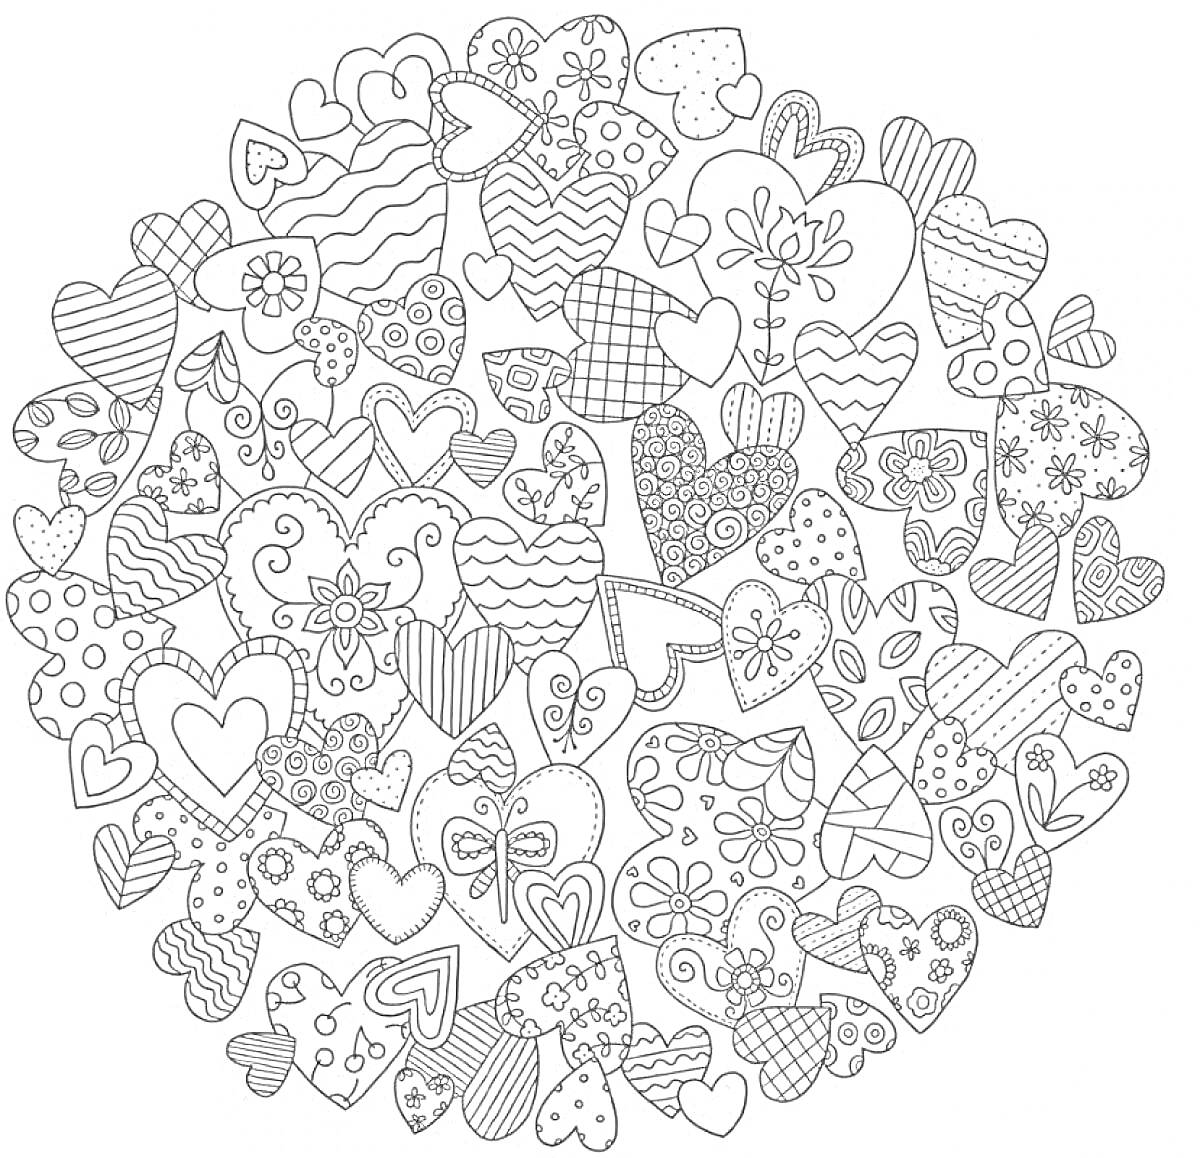 Раскраска Сердечки антистресс. Рисунок включает множество разнообразных сердечек с разными узорами и орнаментами, такими как цветы, полоски, зигзаги, точки и другие геометрические фигуры.